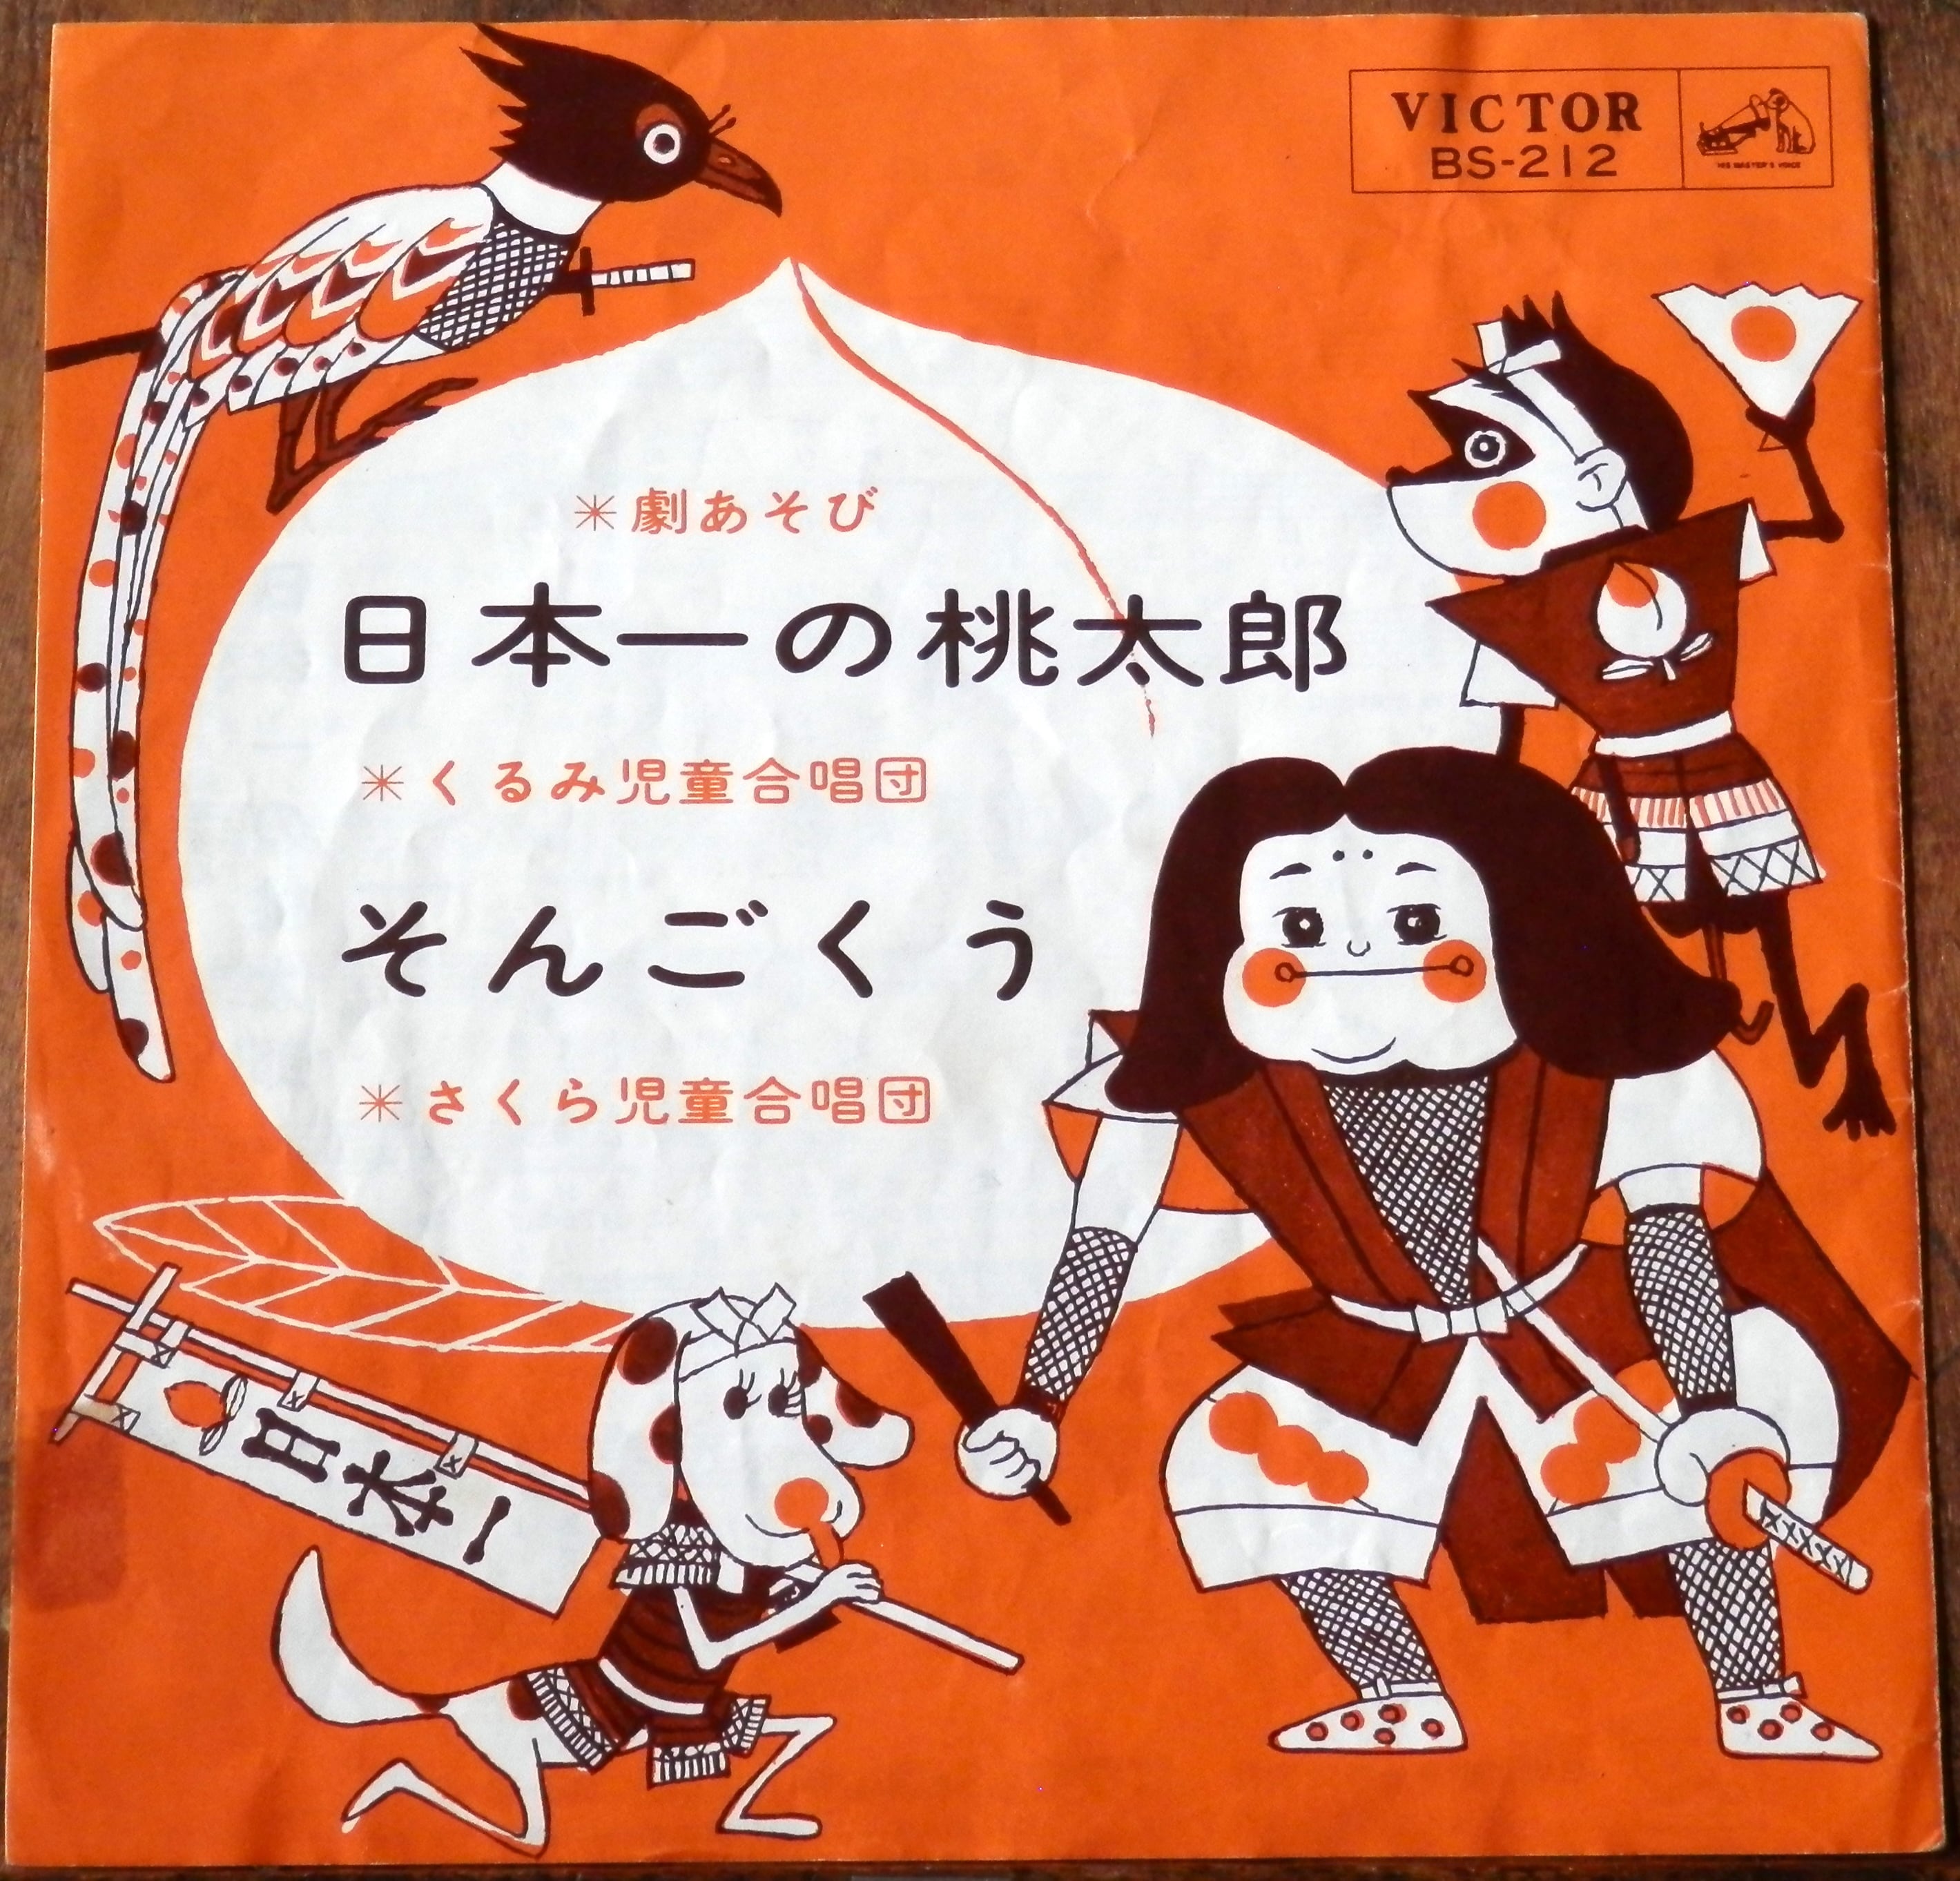 '65【EP】くるみ・さくら児童合唱団 日本一の桃太郎/そんごくう 音盤窟レコード